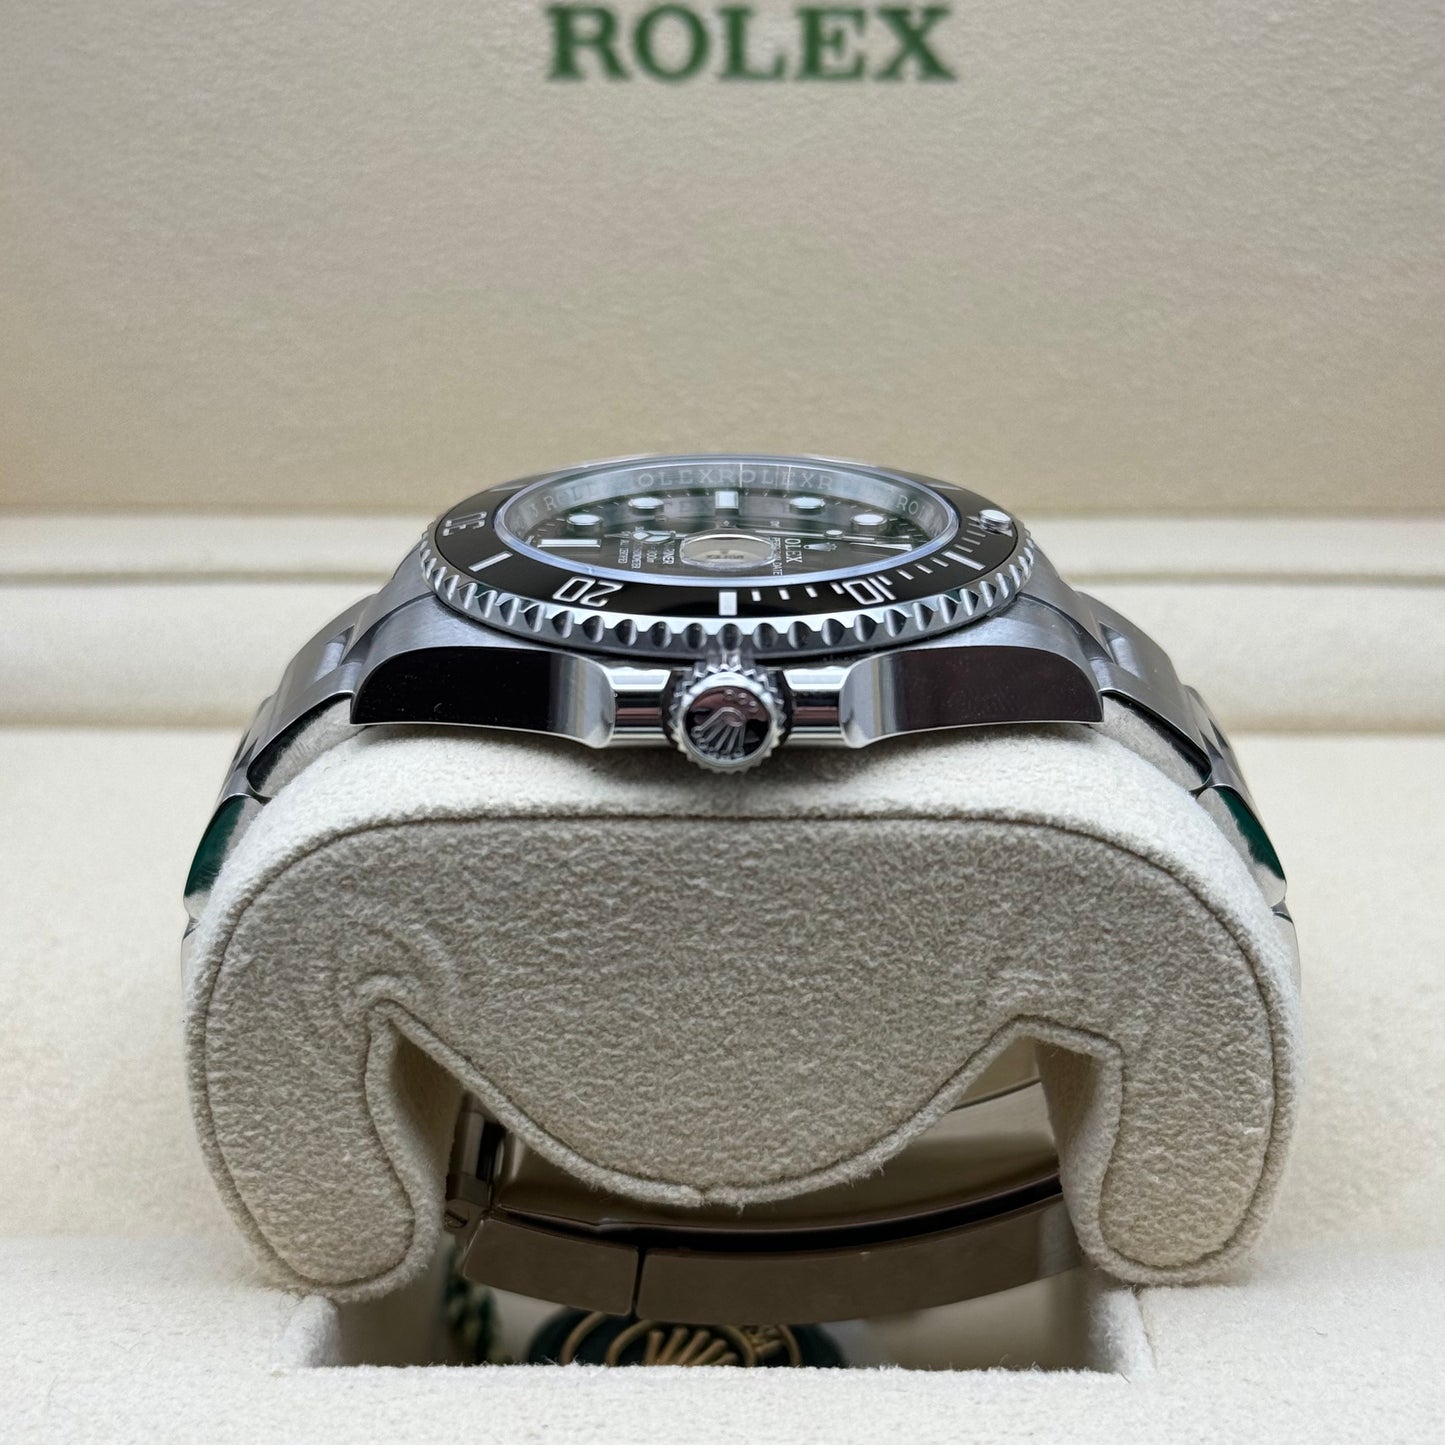 Copy of Rolex Submariner No Date Regal - Hatton Garden Jewellers